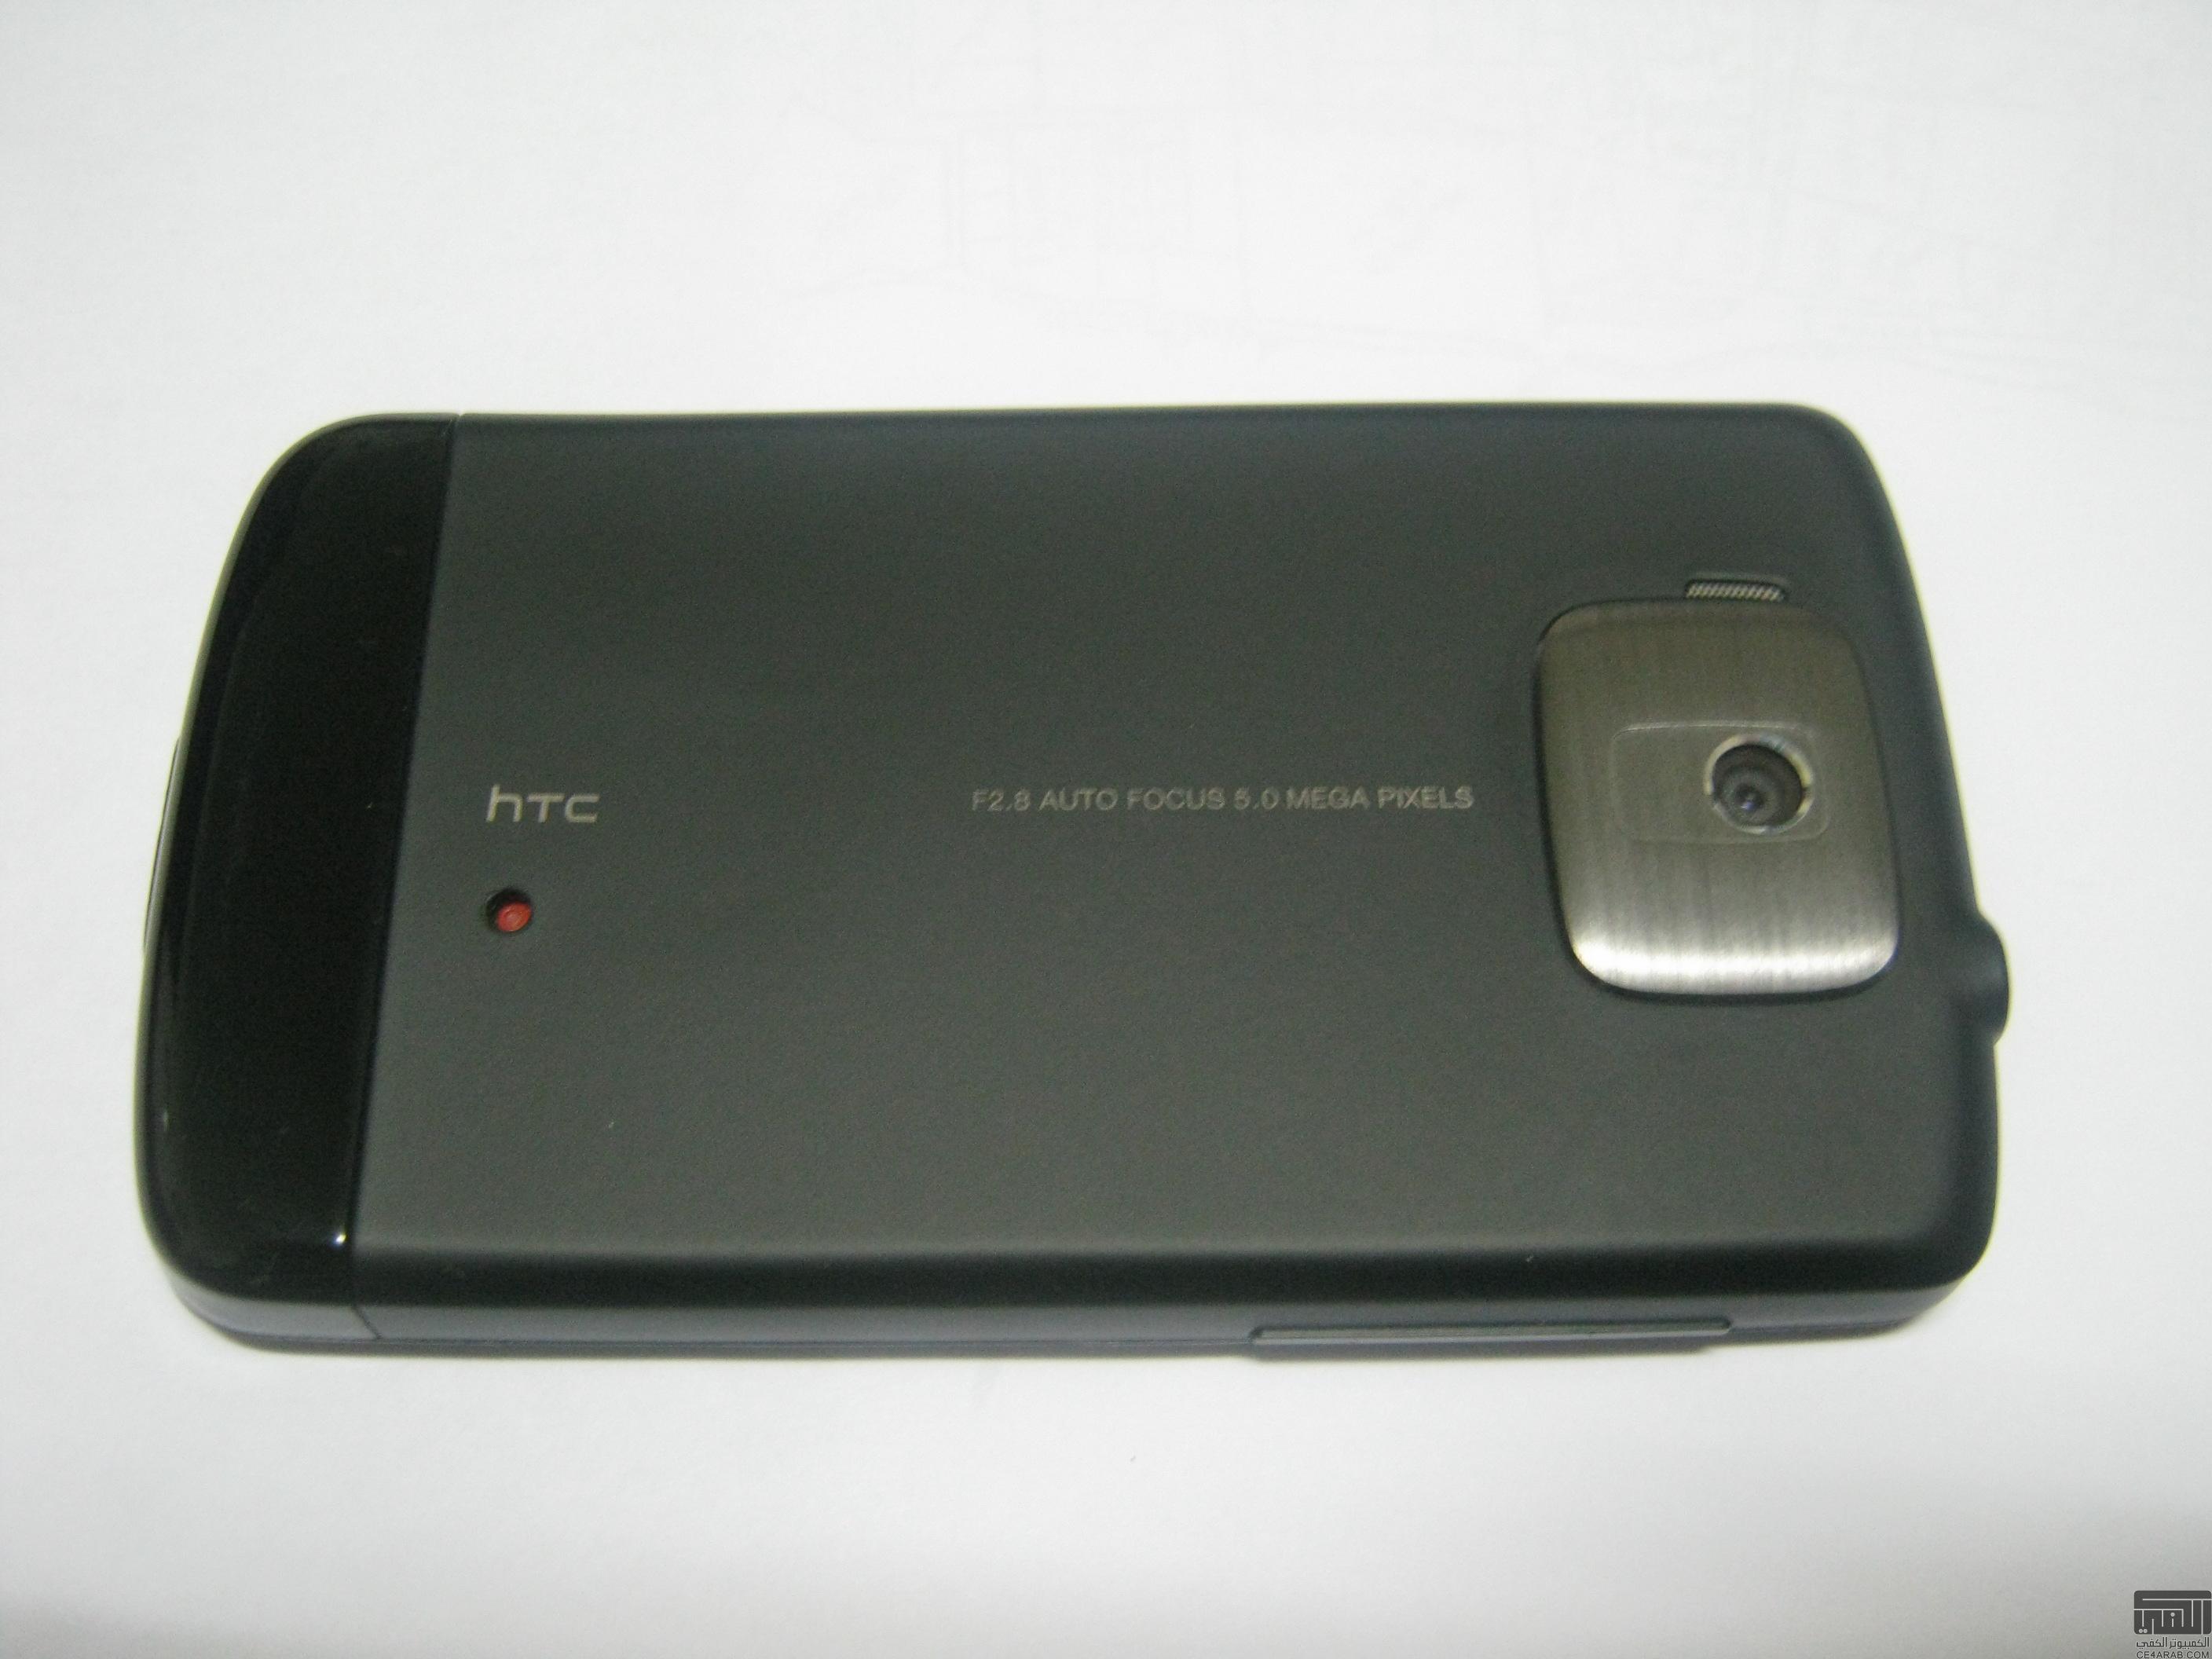 للبيع HTC Touch HD في جدة